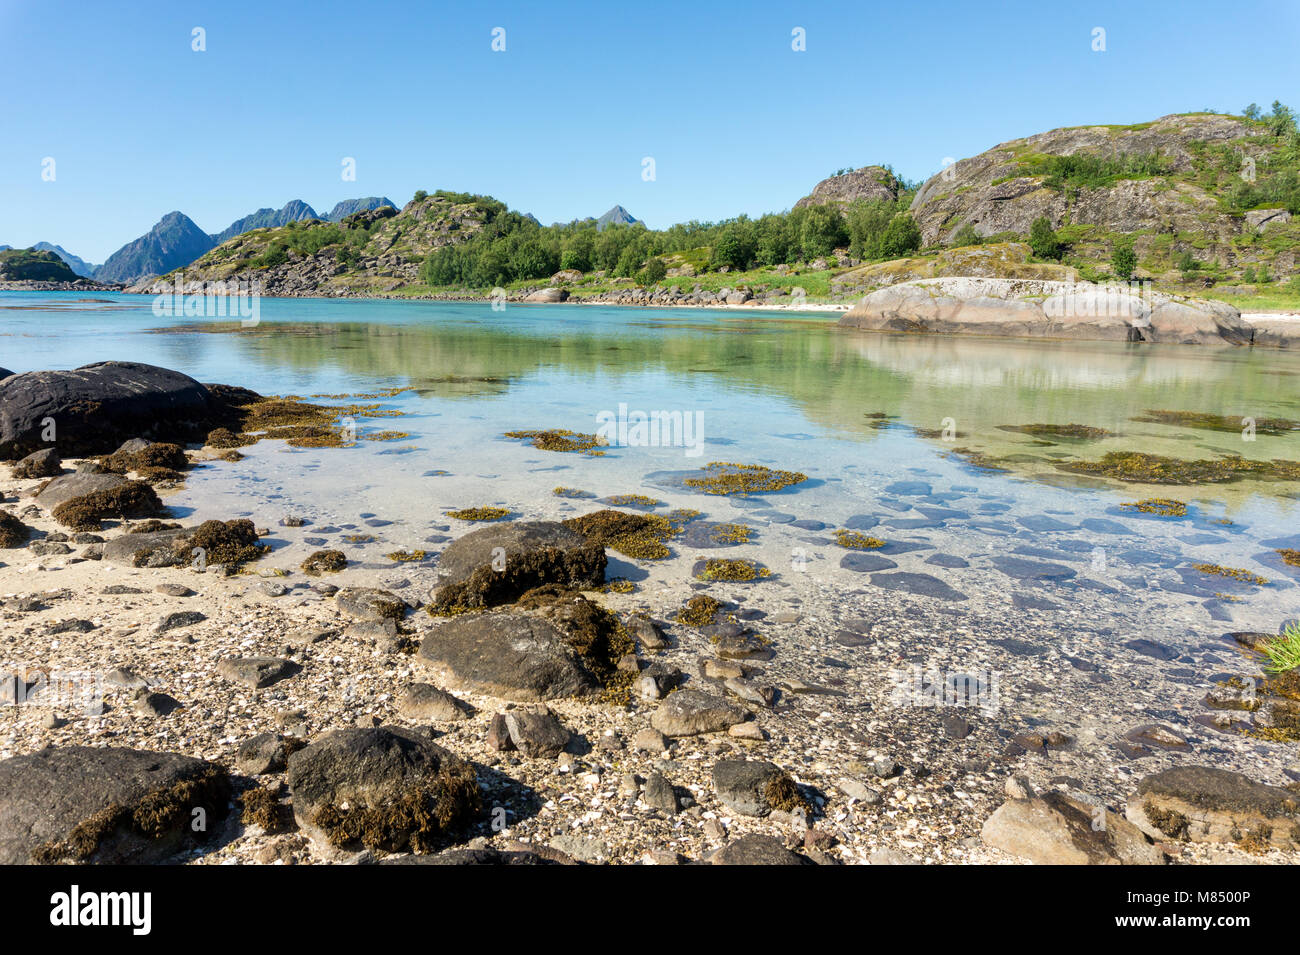 Le acque turchesi della baia, le pietre e la verde erba in estate, Arsteinen isola dell'arcipelago delle Lofoten, Norvegia Foto Stock